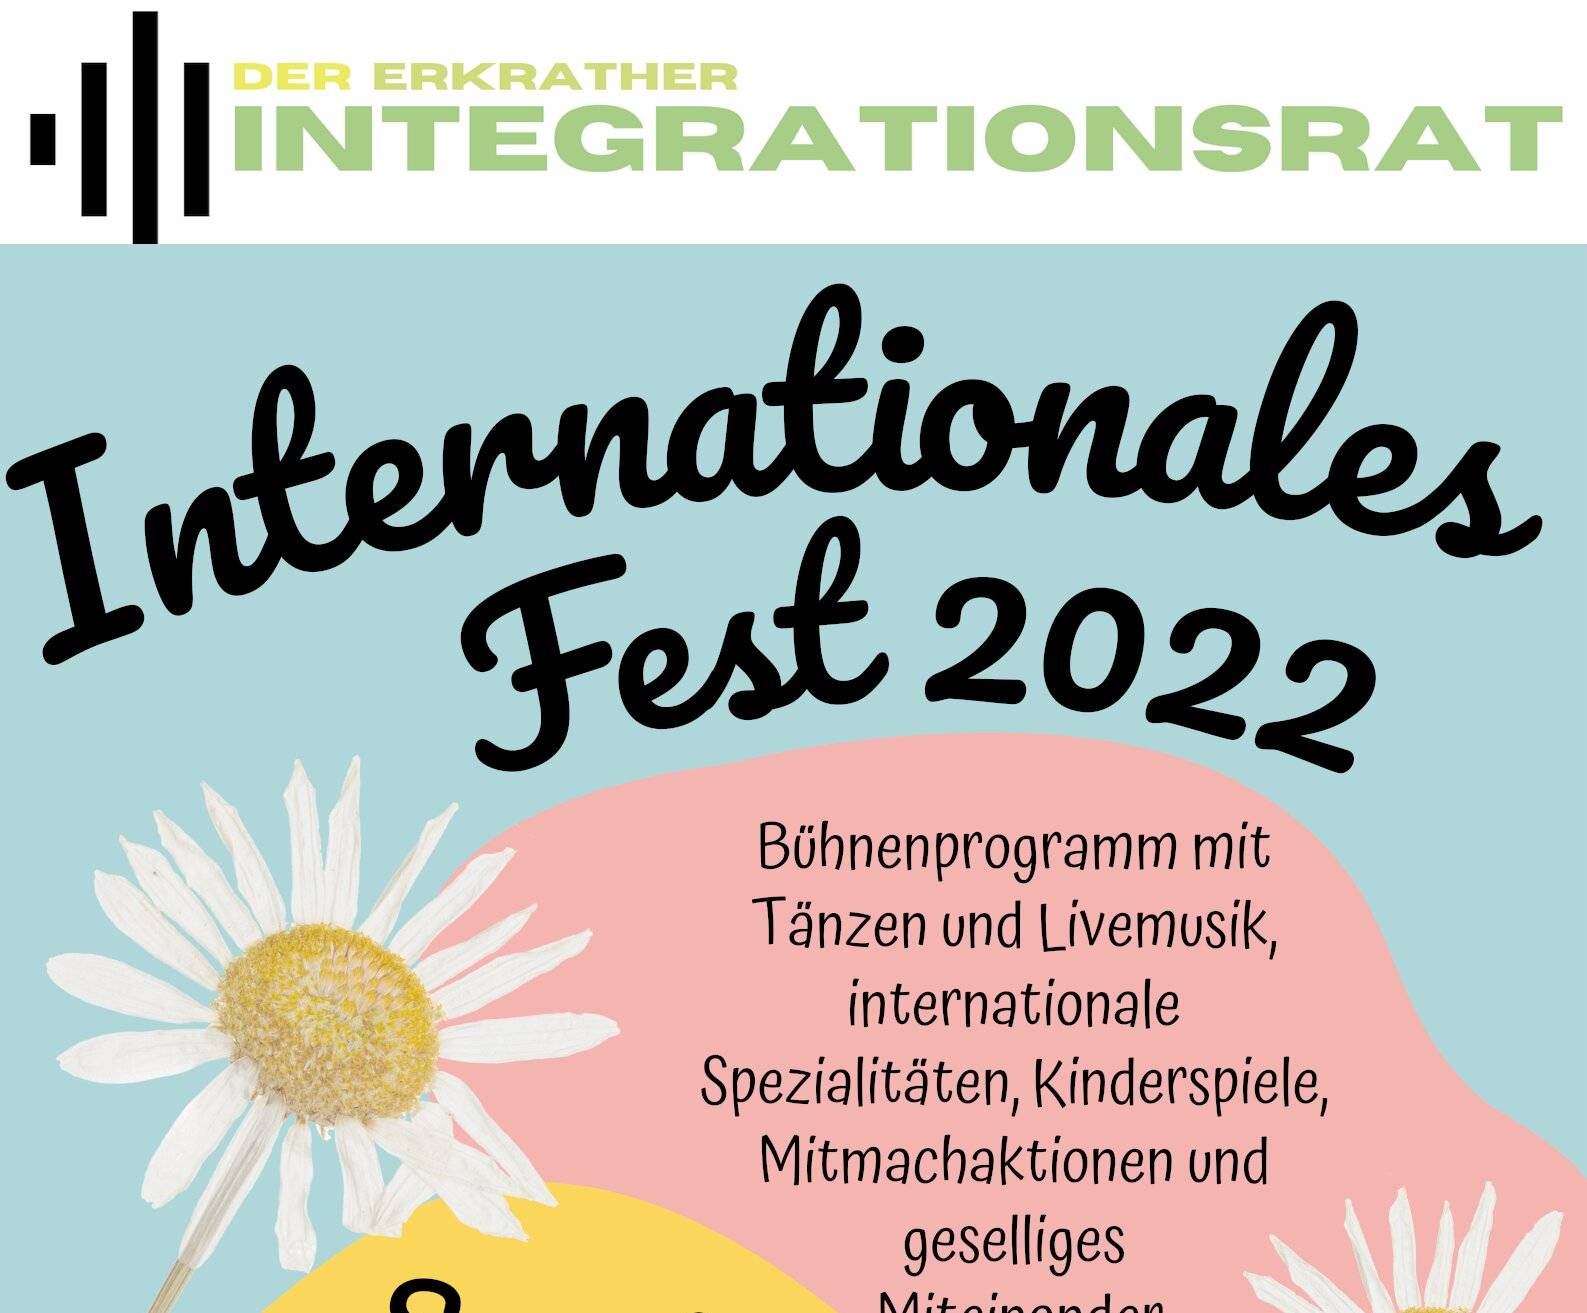 Internationales Fest des Integrationsrates